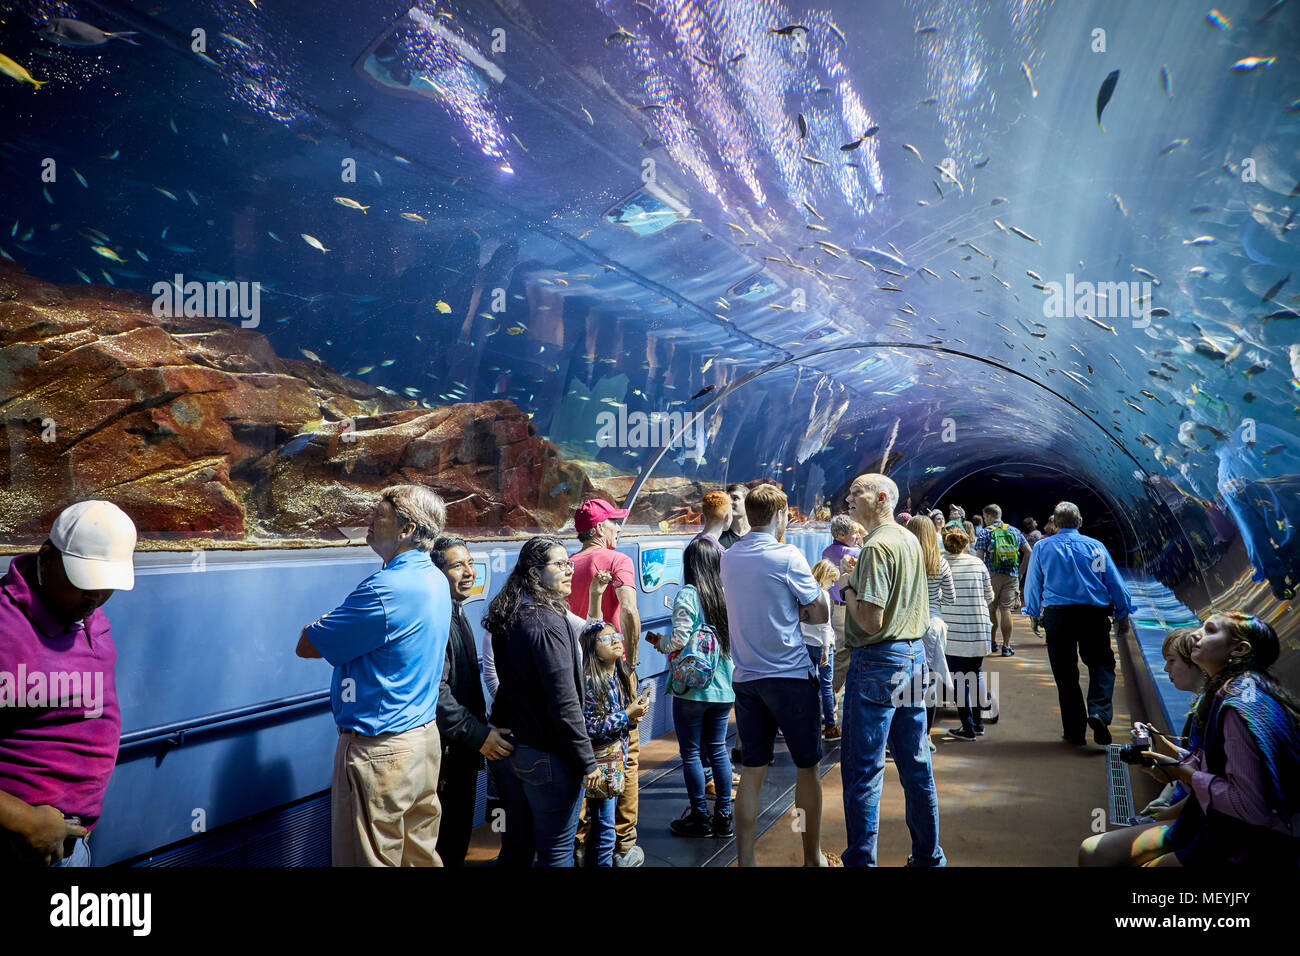 Atlanta, Hauptstadt des US-Bundesstaates Georgia, das Georgia Aquarium Interieur Glas Tunnel und beweglichen Boden Ocean Voyager Ausstellung tunnel Stockfoto